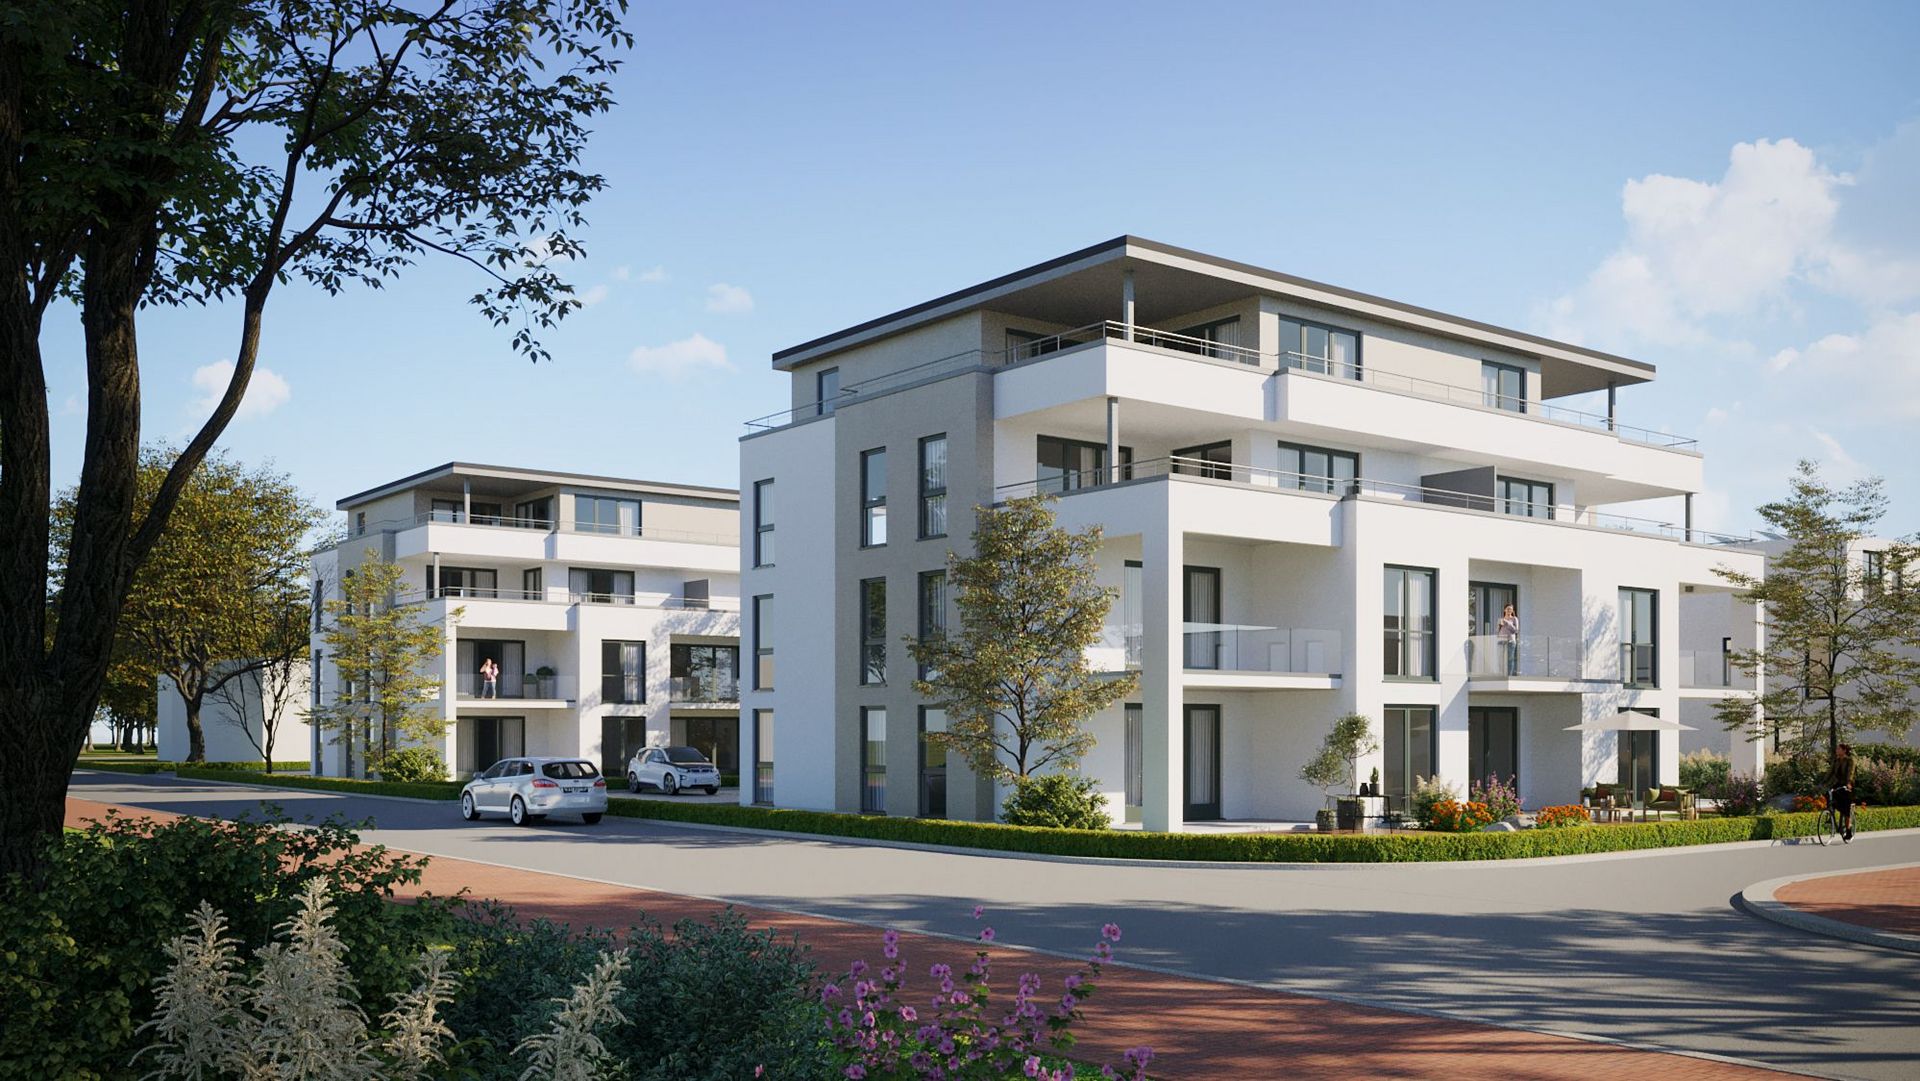 3D-Illustration der beiden geplanten Mehrfamilienhäusern mit je 9 Einheiten im Wohnquartier Espelweg